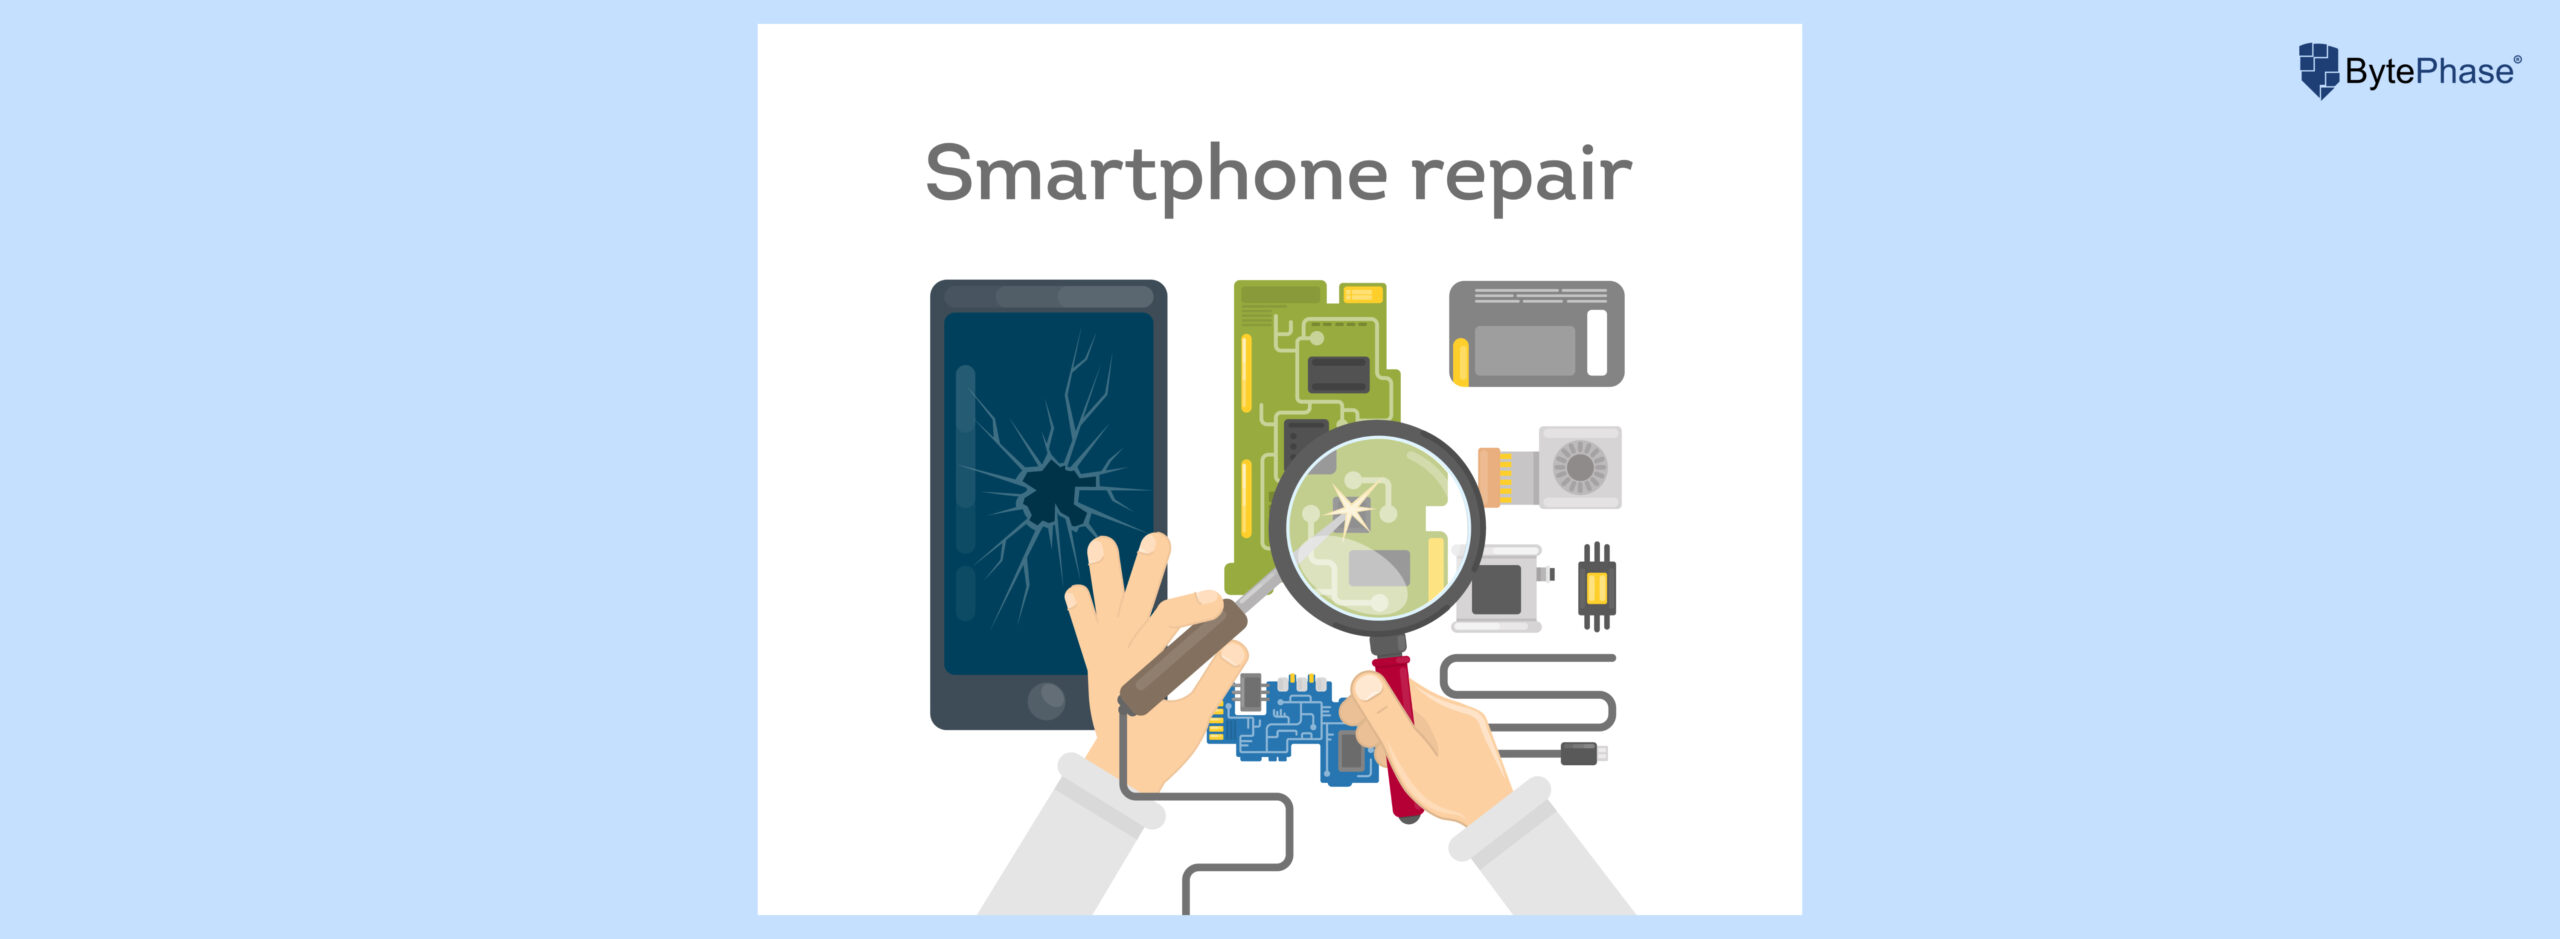 mobile phone repair shop software